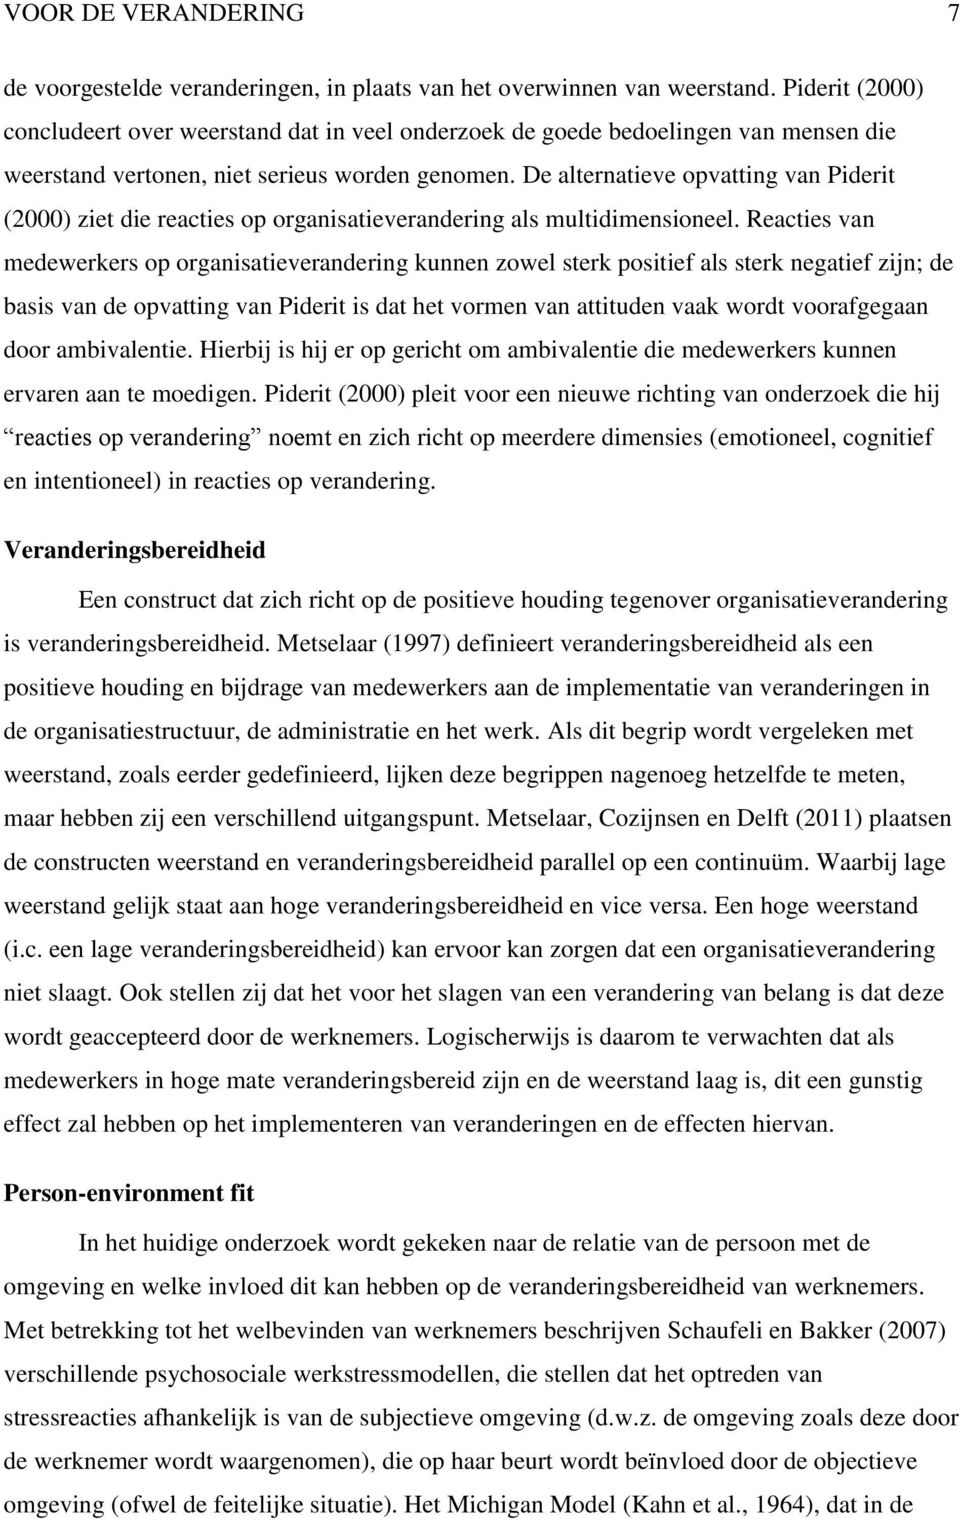 De alternatieve opvatting van Piderit (2000) ziet die reacties op organisatieverandering als multidimensioneel.